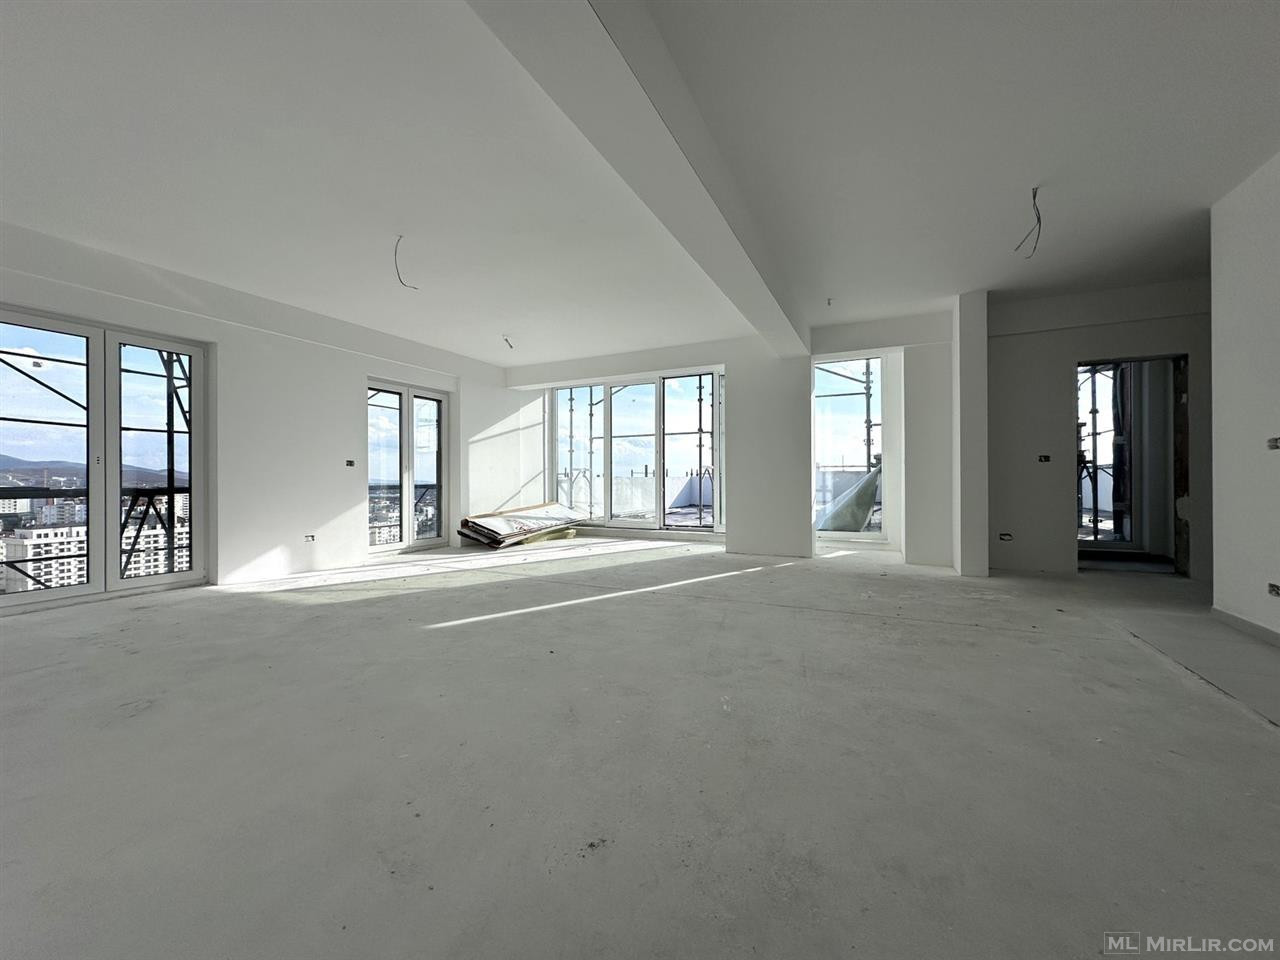 Ofrohet për #SHITJE Penthouse 135 m²Banim dhe 116 m² Terasë 